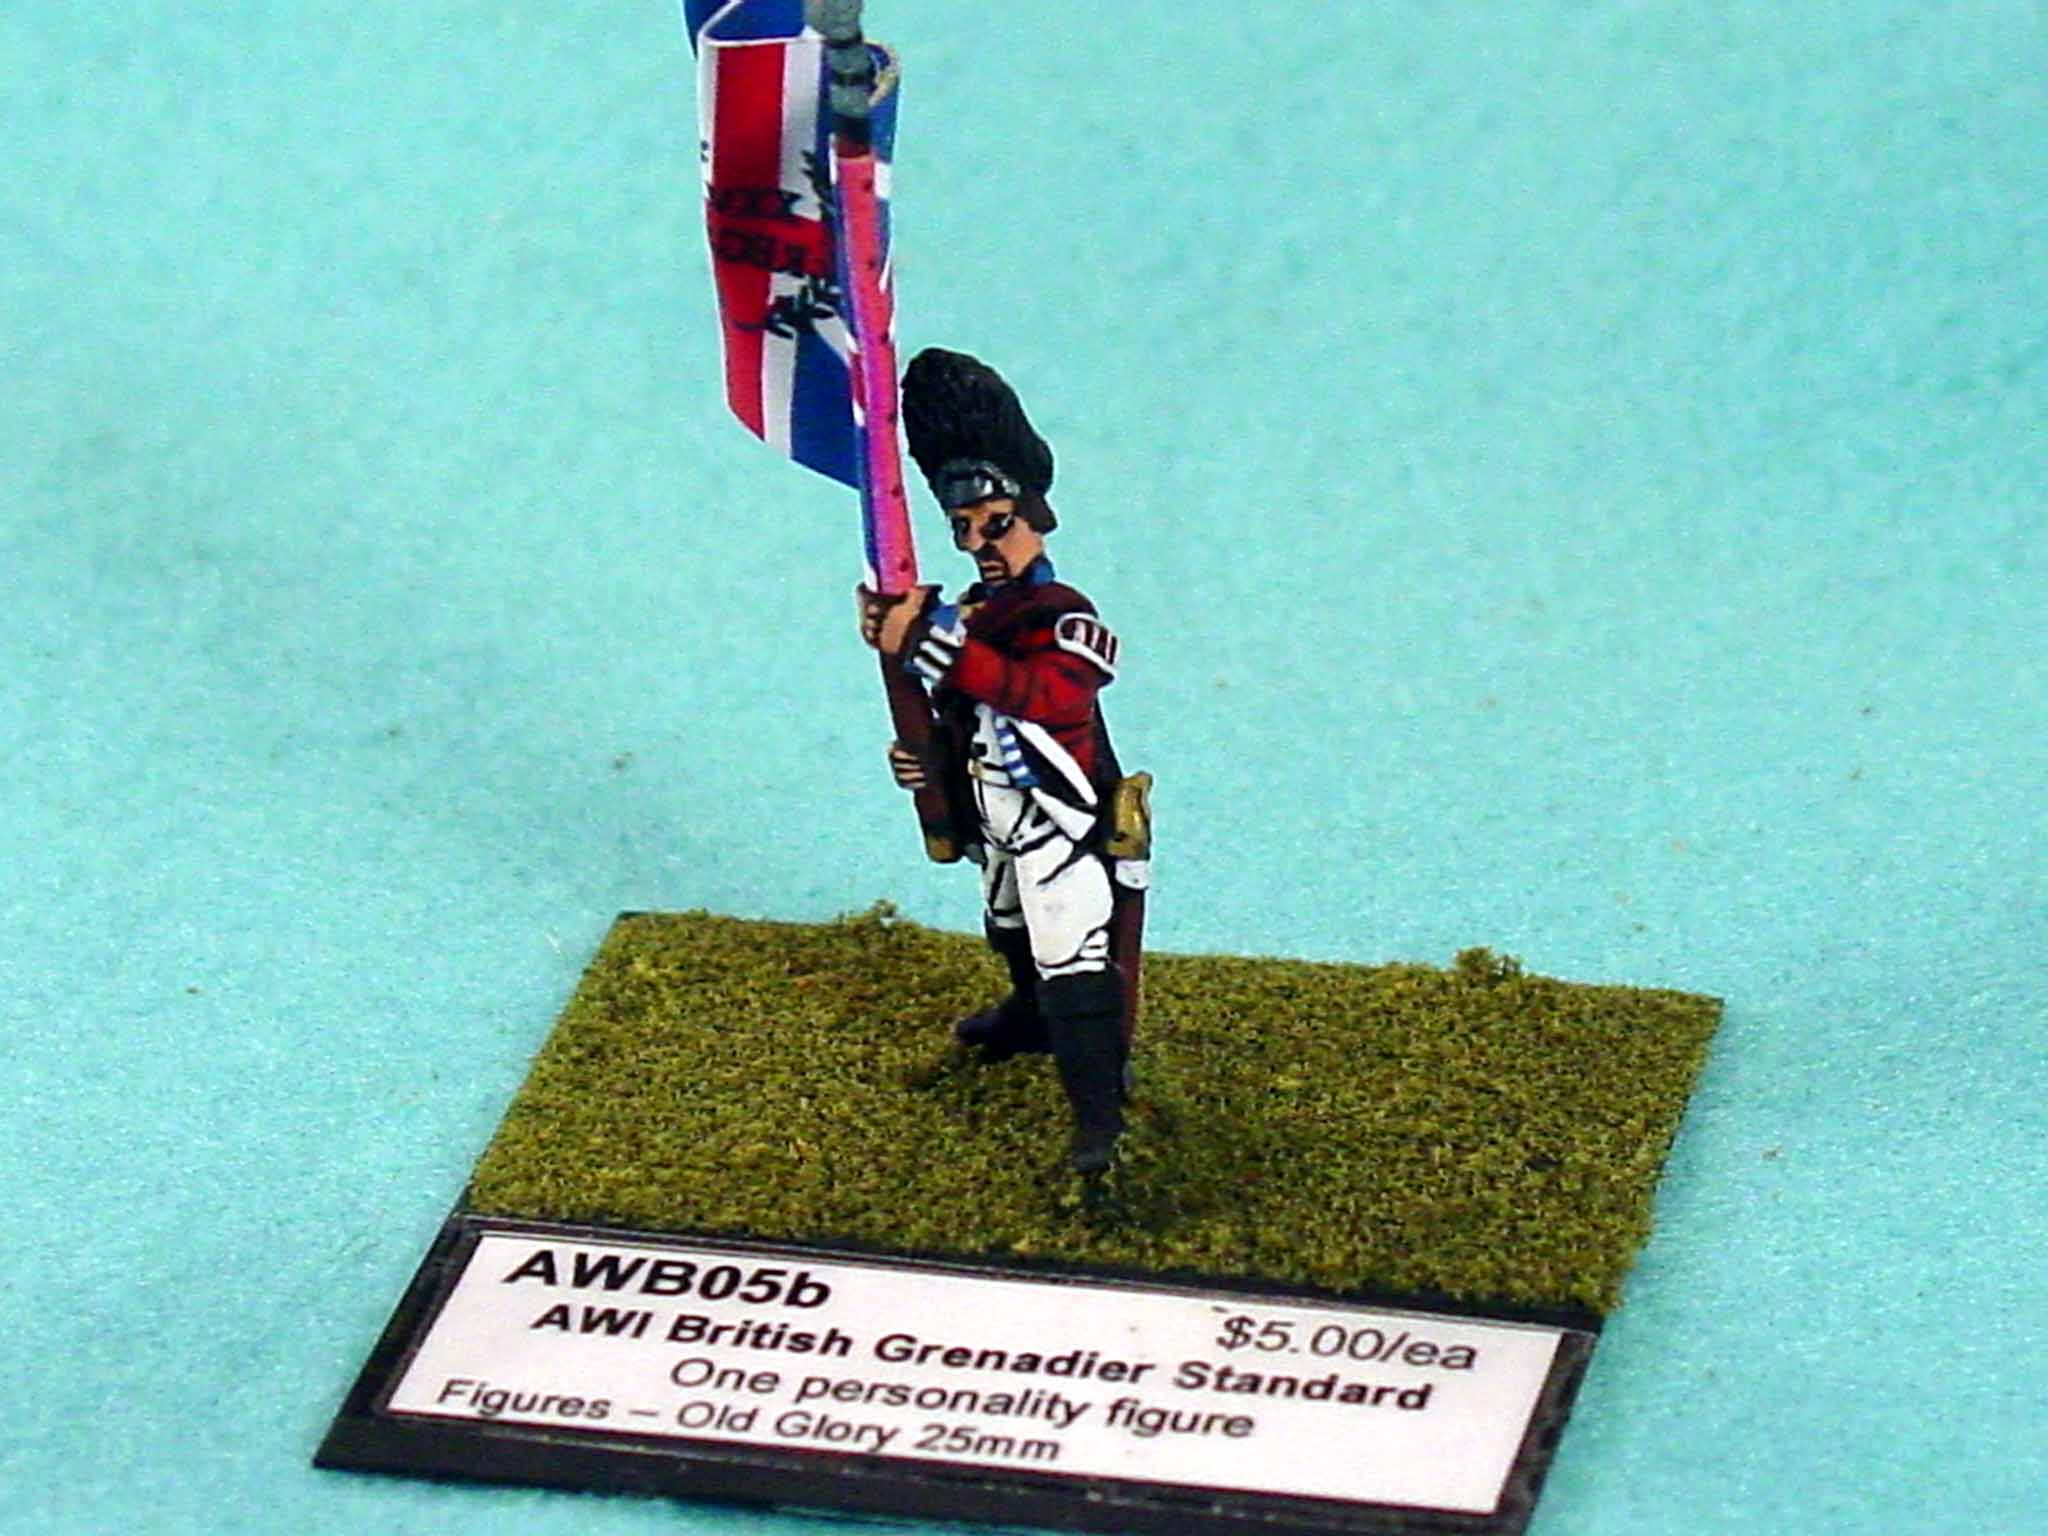 British Grenadier Command